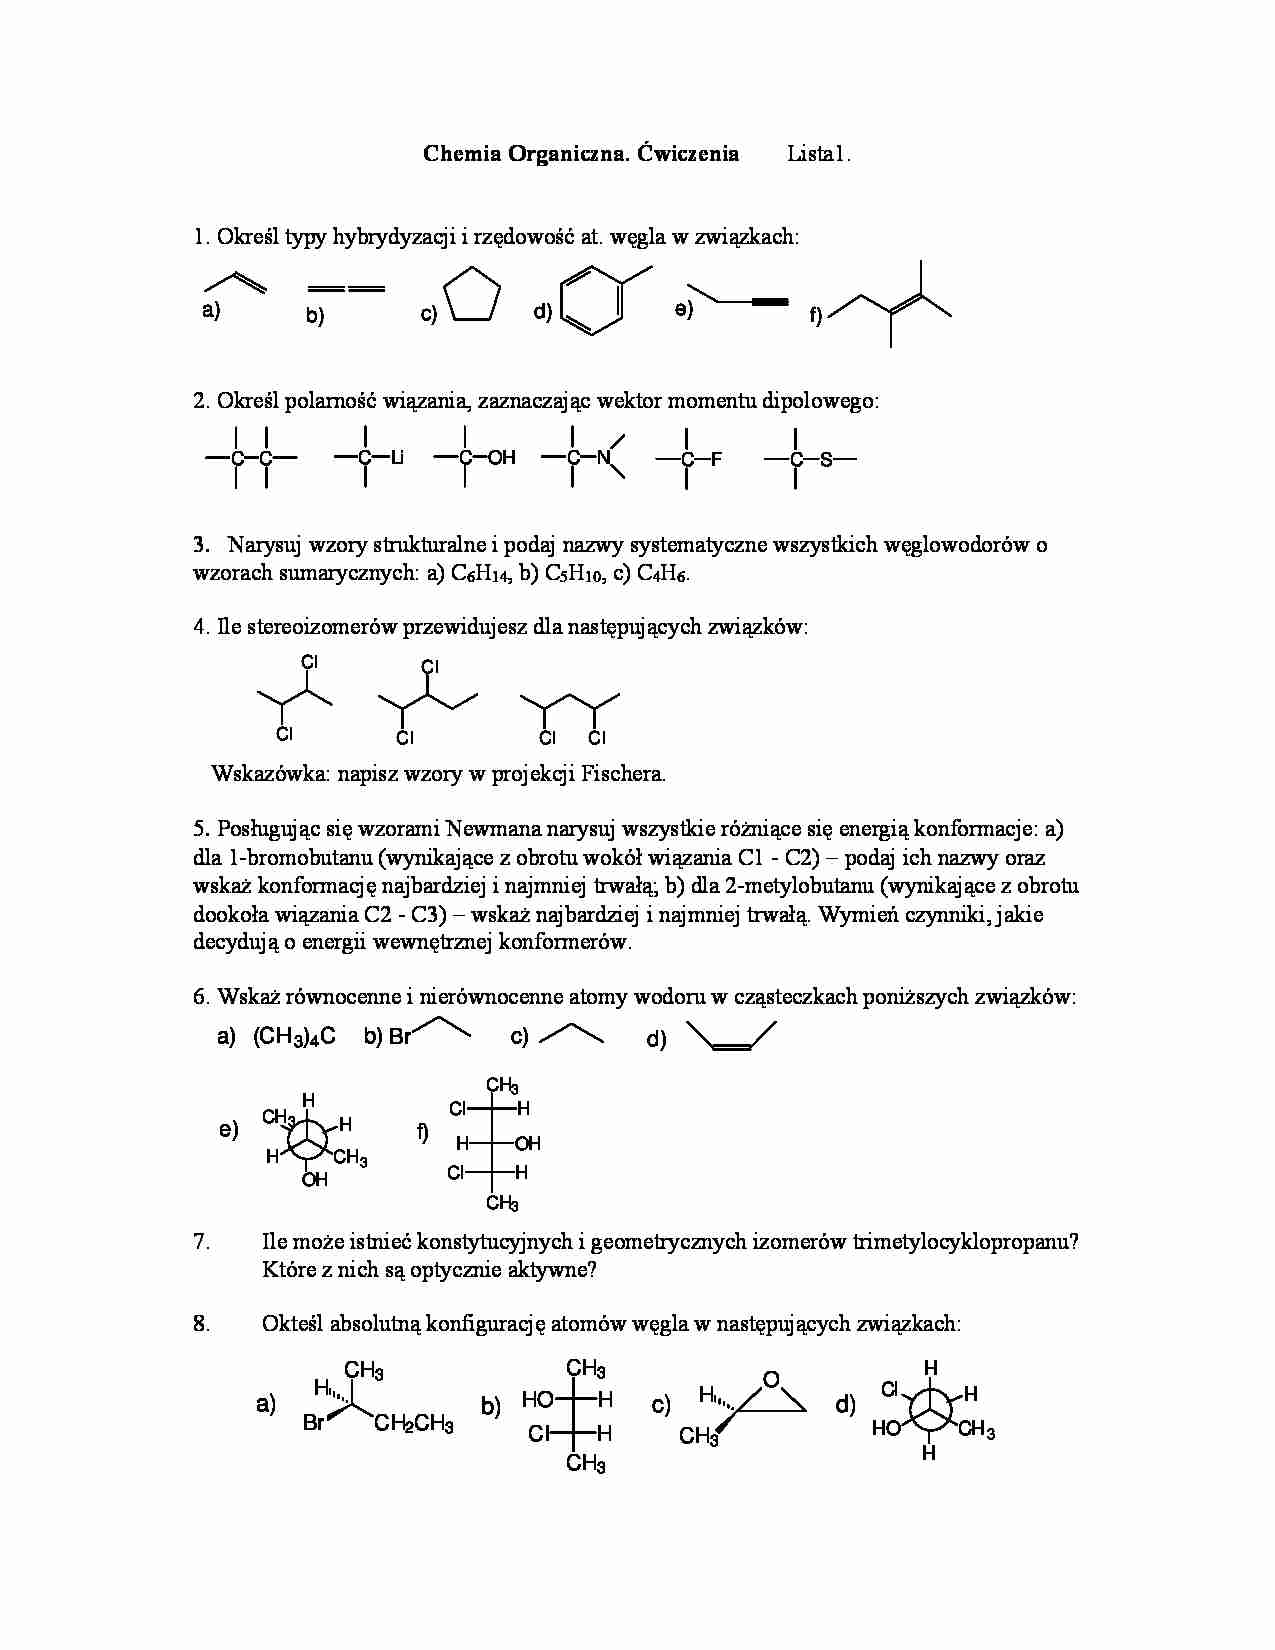 Chemia organiczna - ćwiczenia, lista I - strona 1